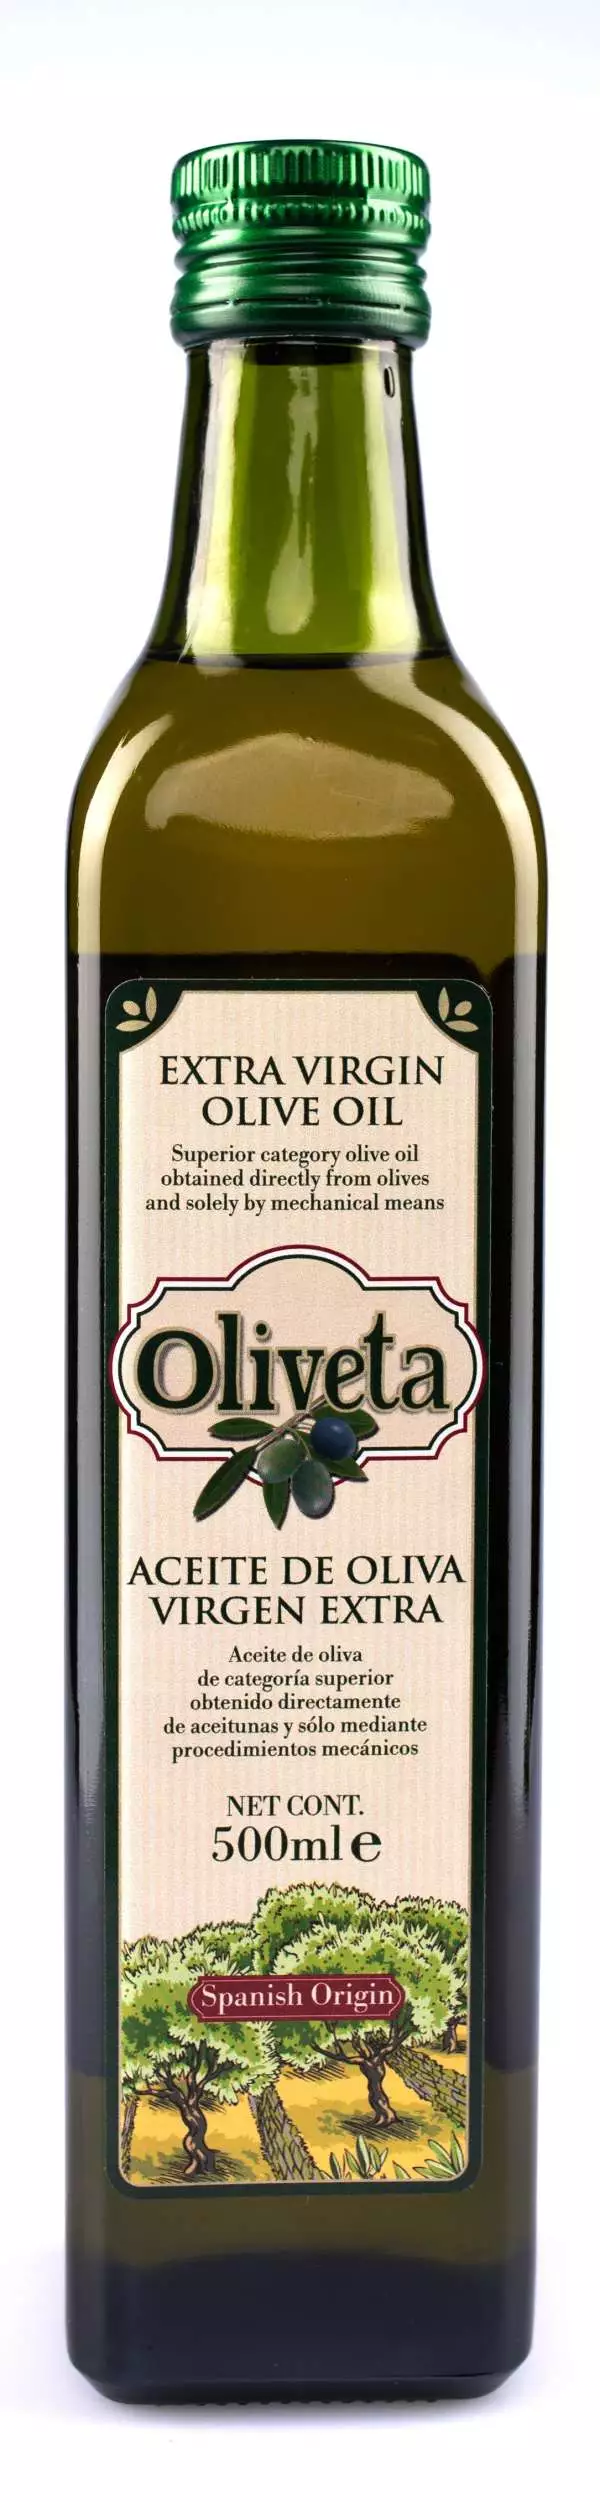 151. Olej olivový panenský 500 ml Oliveta.jpg